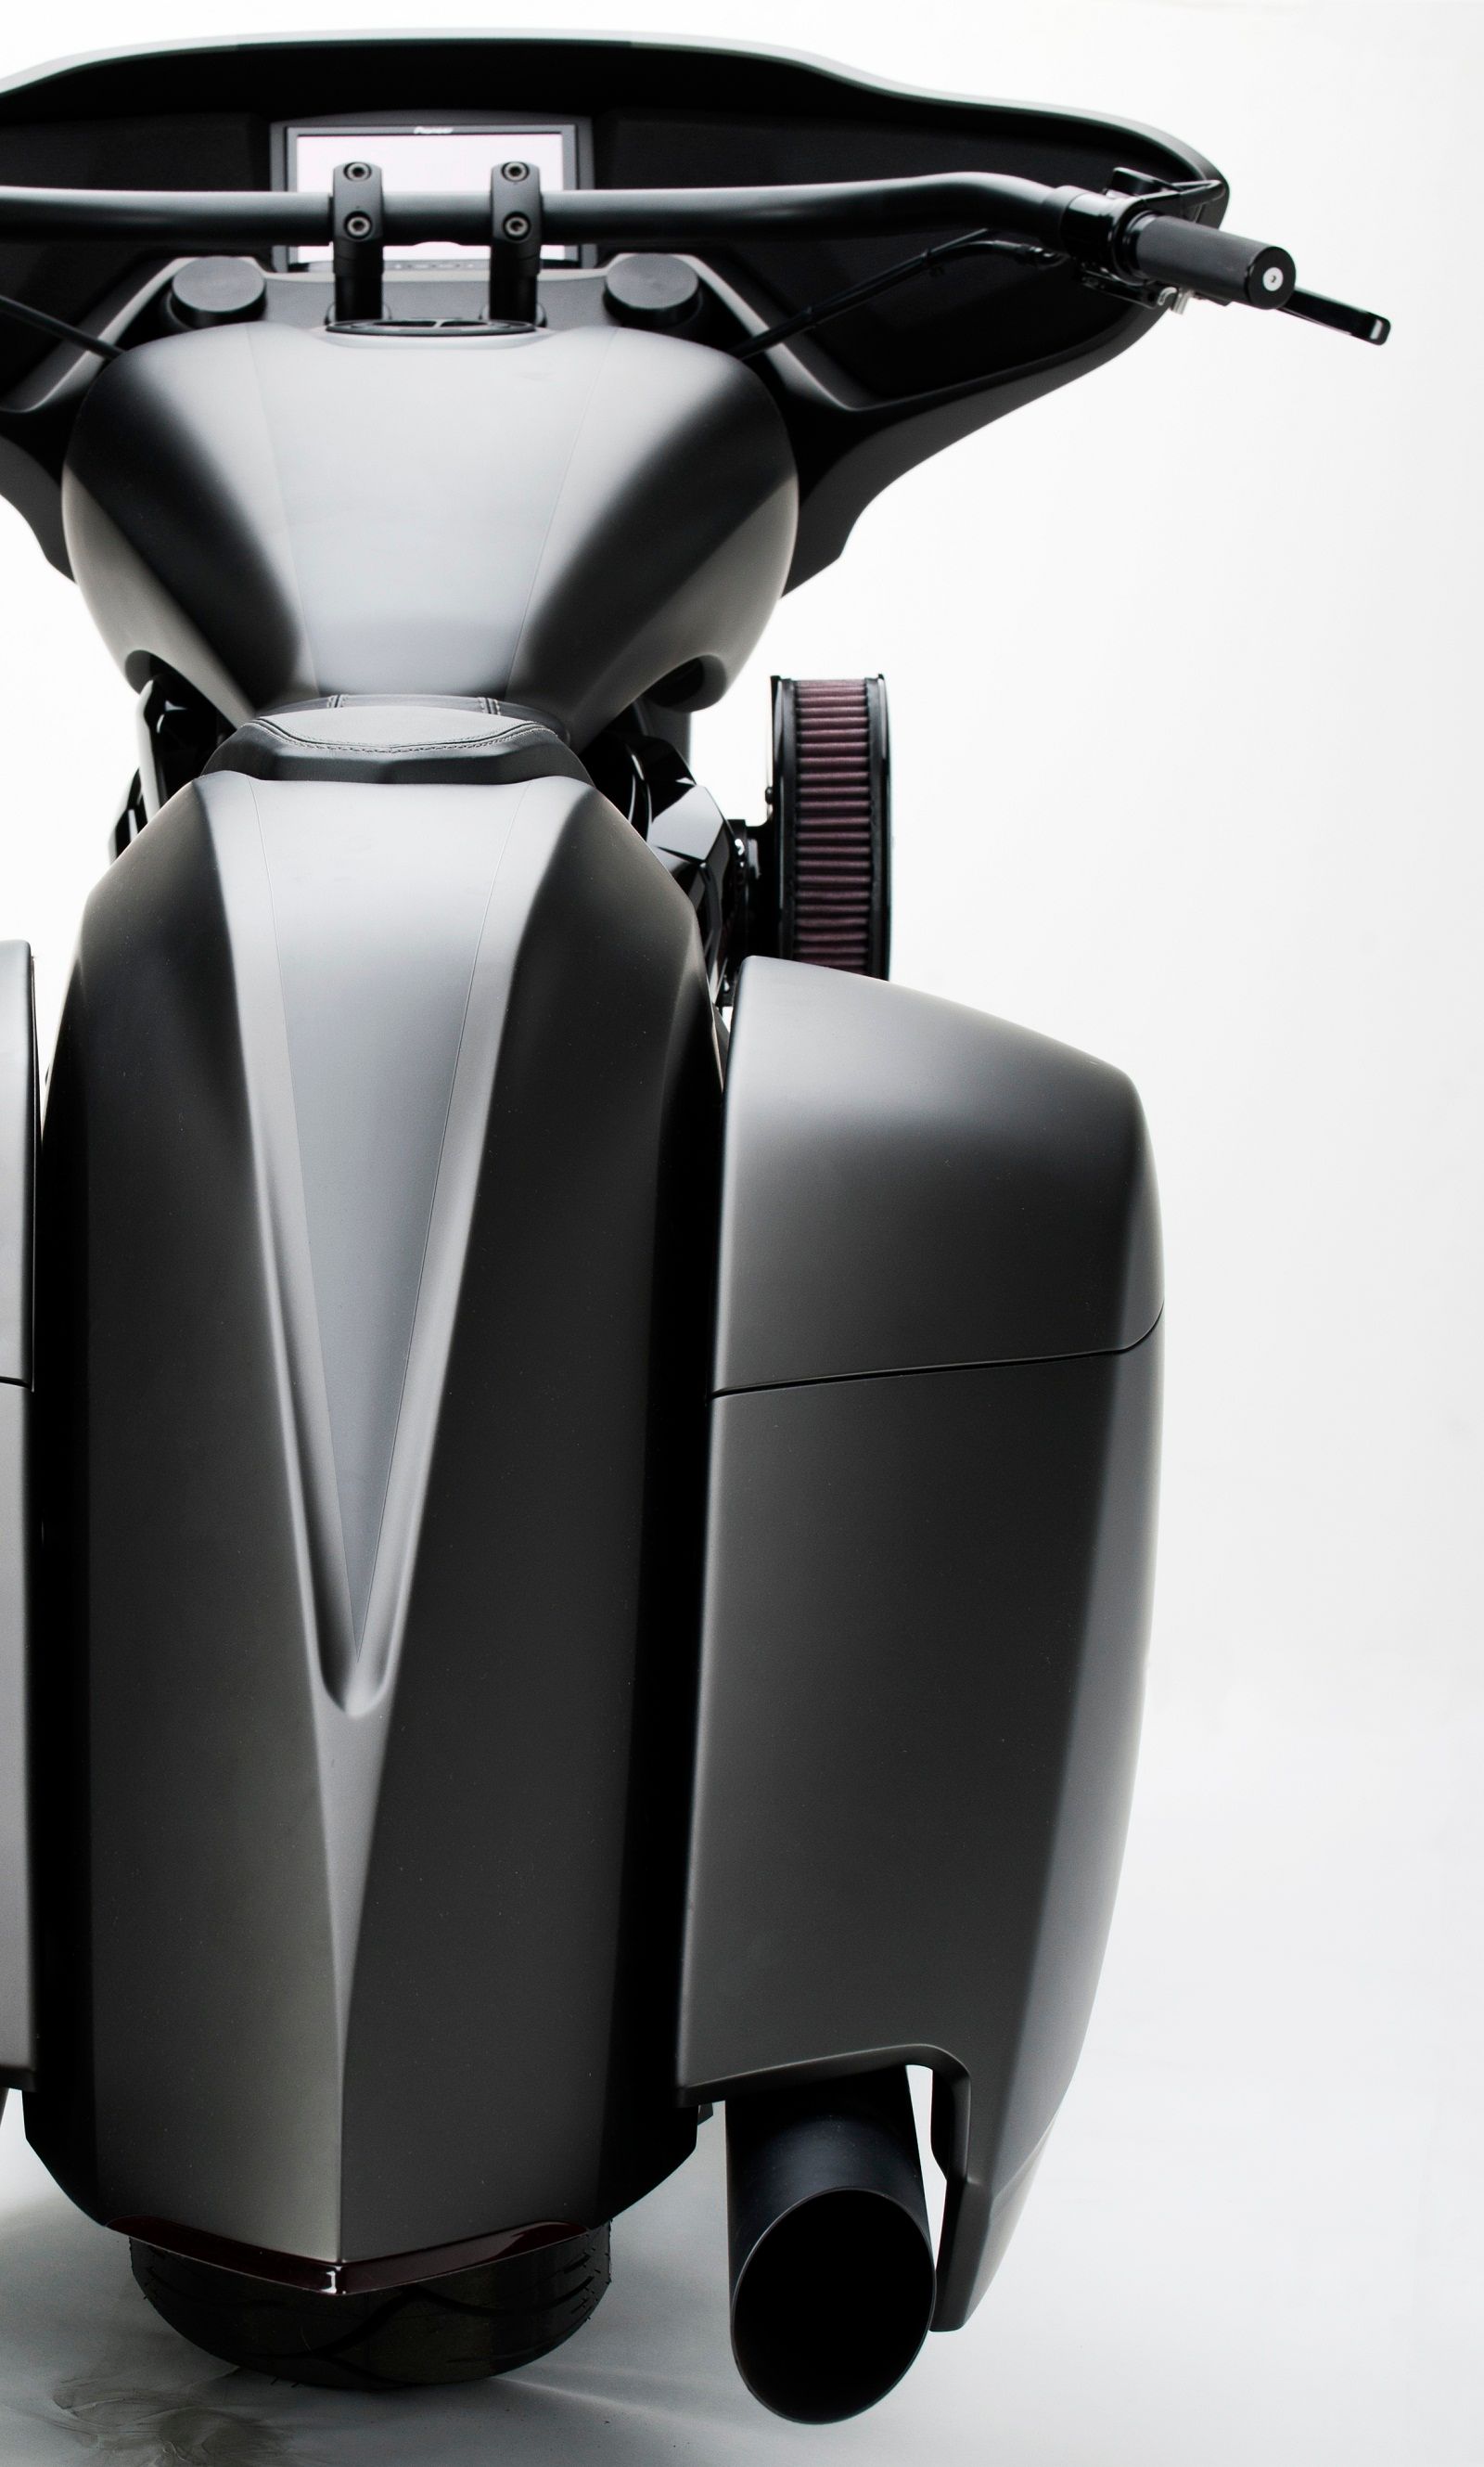 2011 Honda Stateline Slammer Bagger Concept